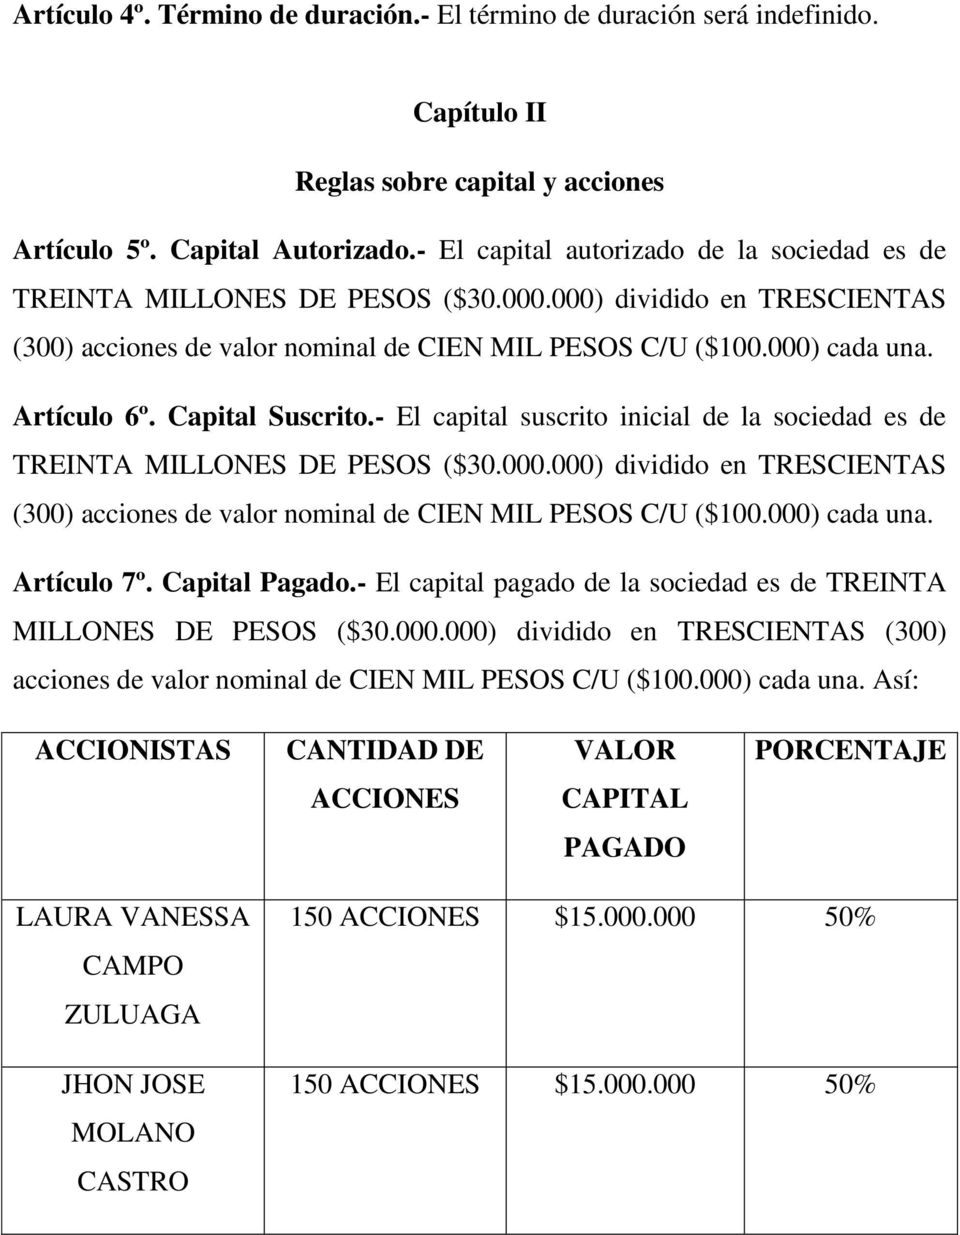 Capital Suscrito.- El capital suscrito inicial de la sociedad es de TREINTA MILLONES DE PESOS ($30.000.000) dividido en TRESCIENTAS (300) acciones de valor nominal de CIEN MIL PESOS C/U ($100.